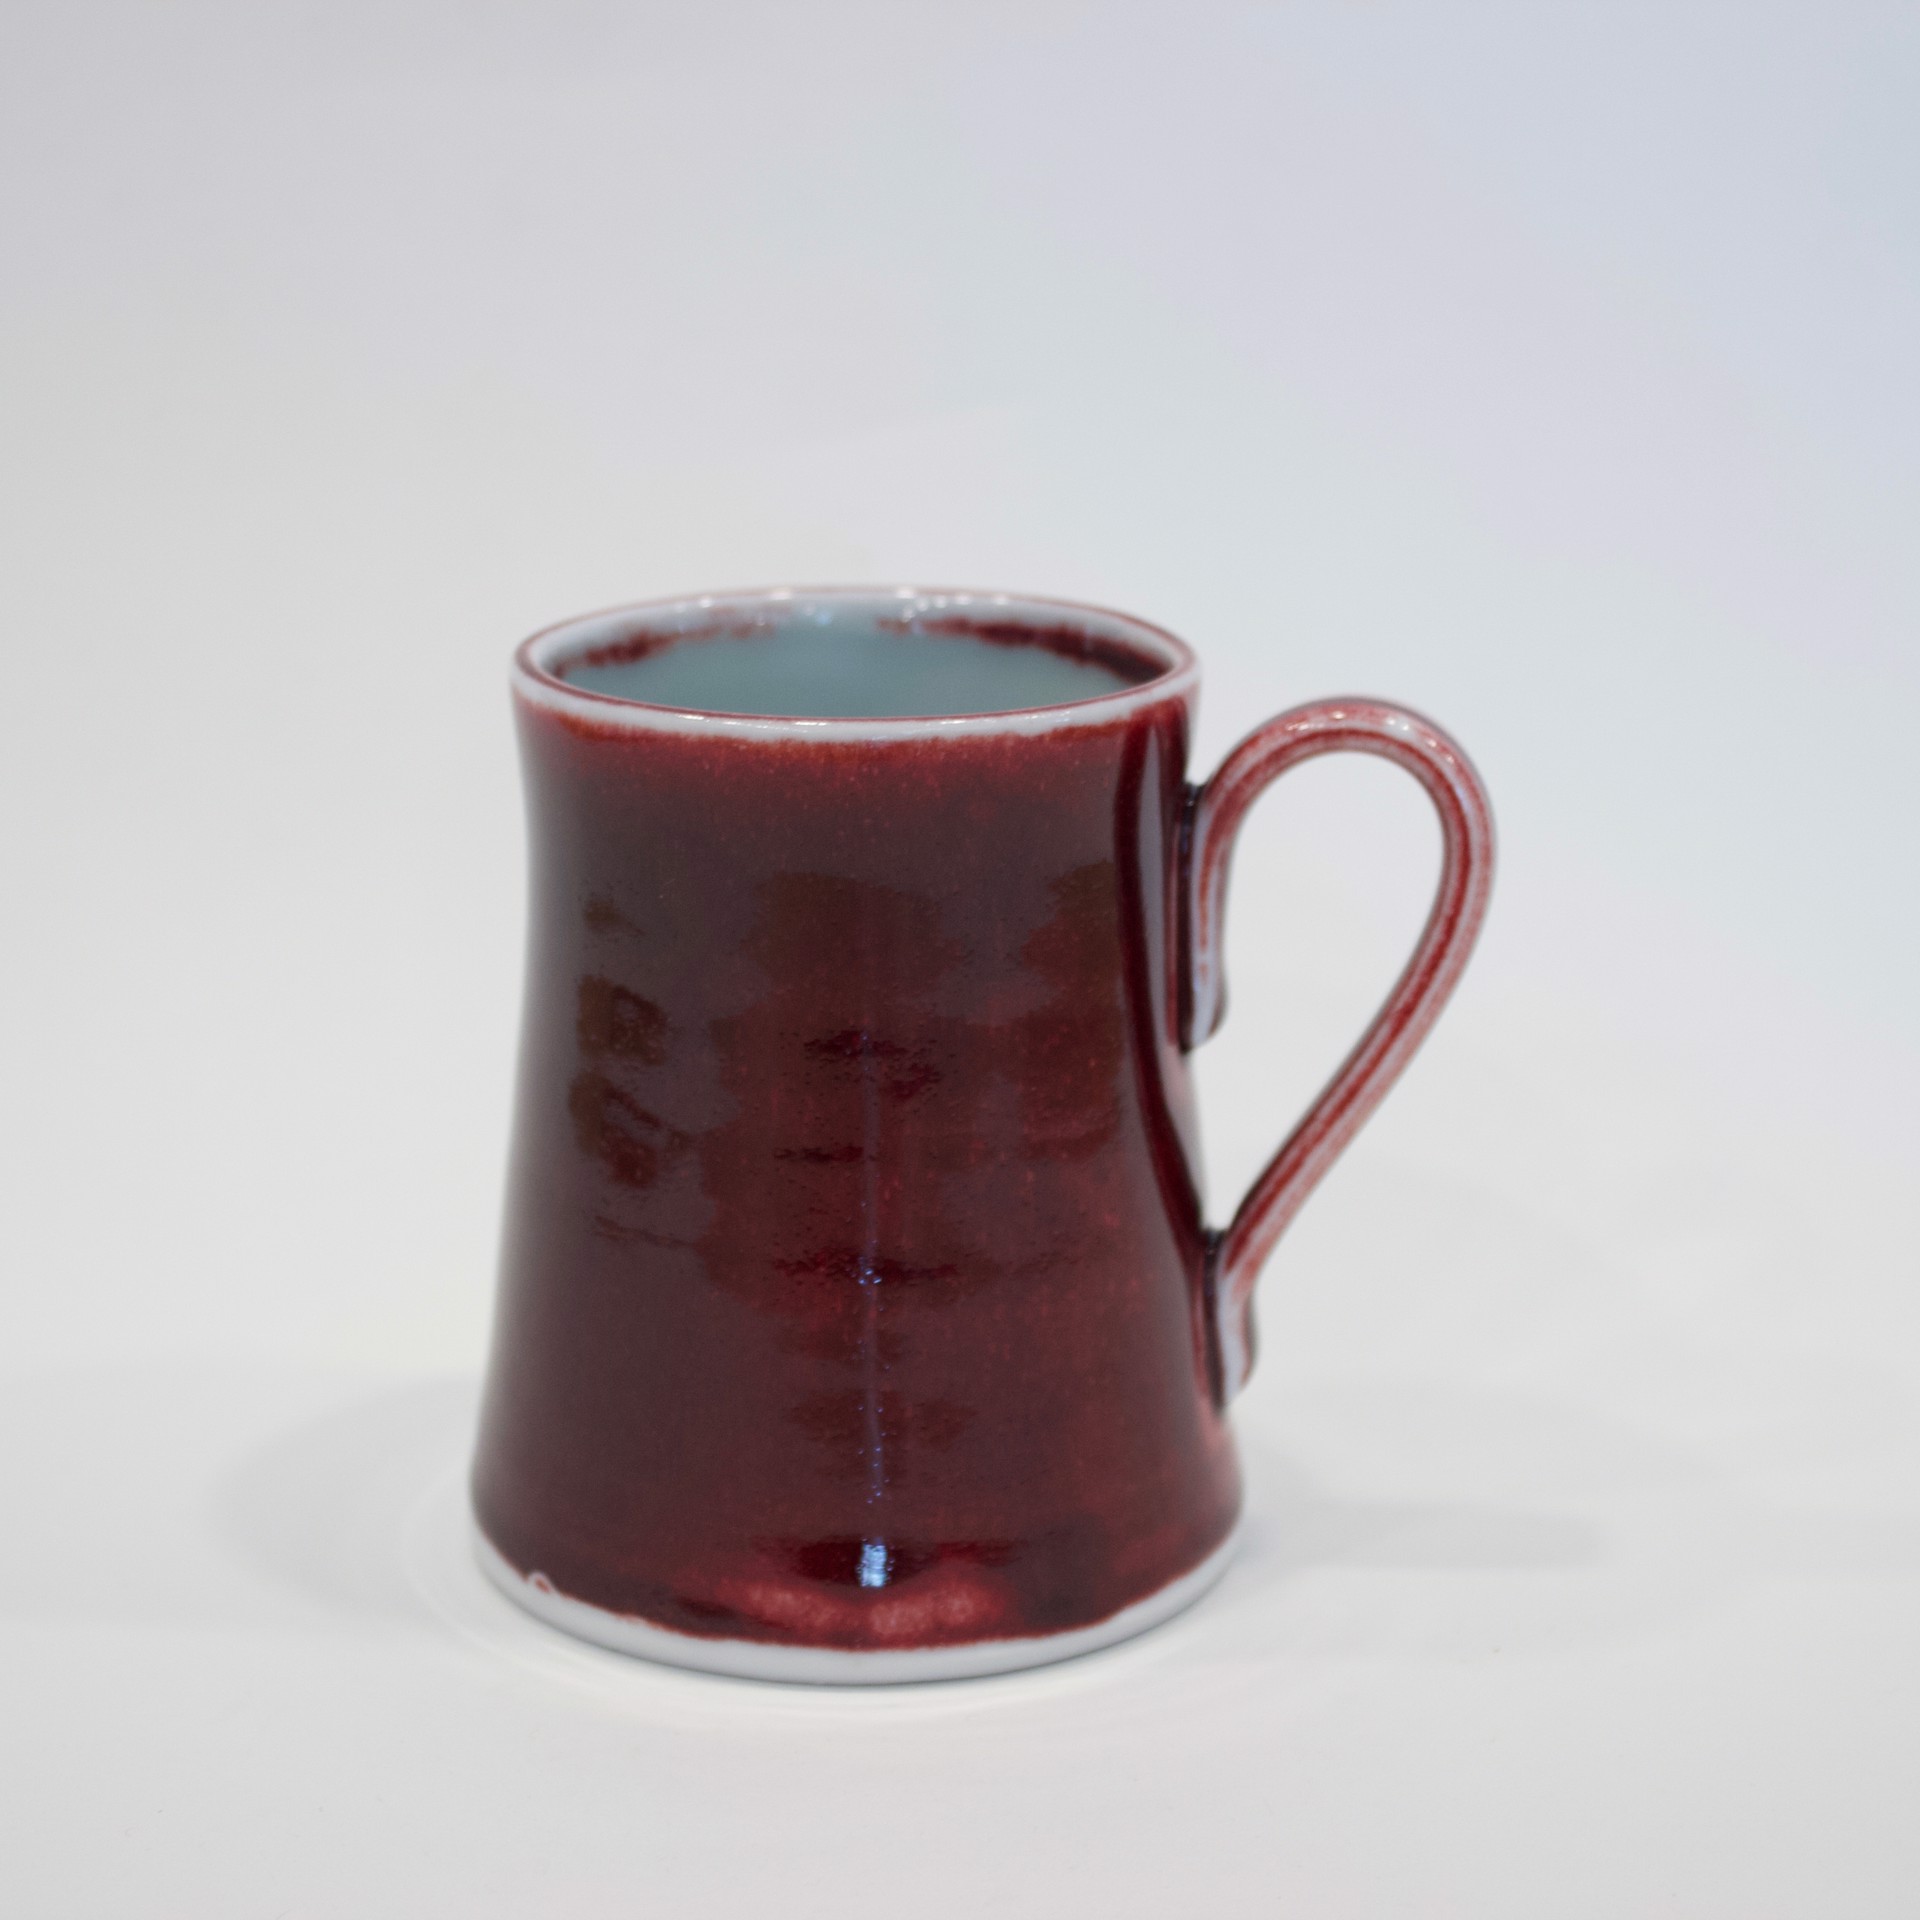 Oxblood Red Mug by John Masterton